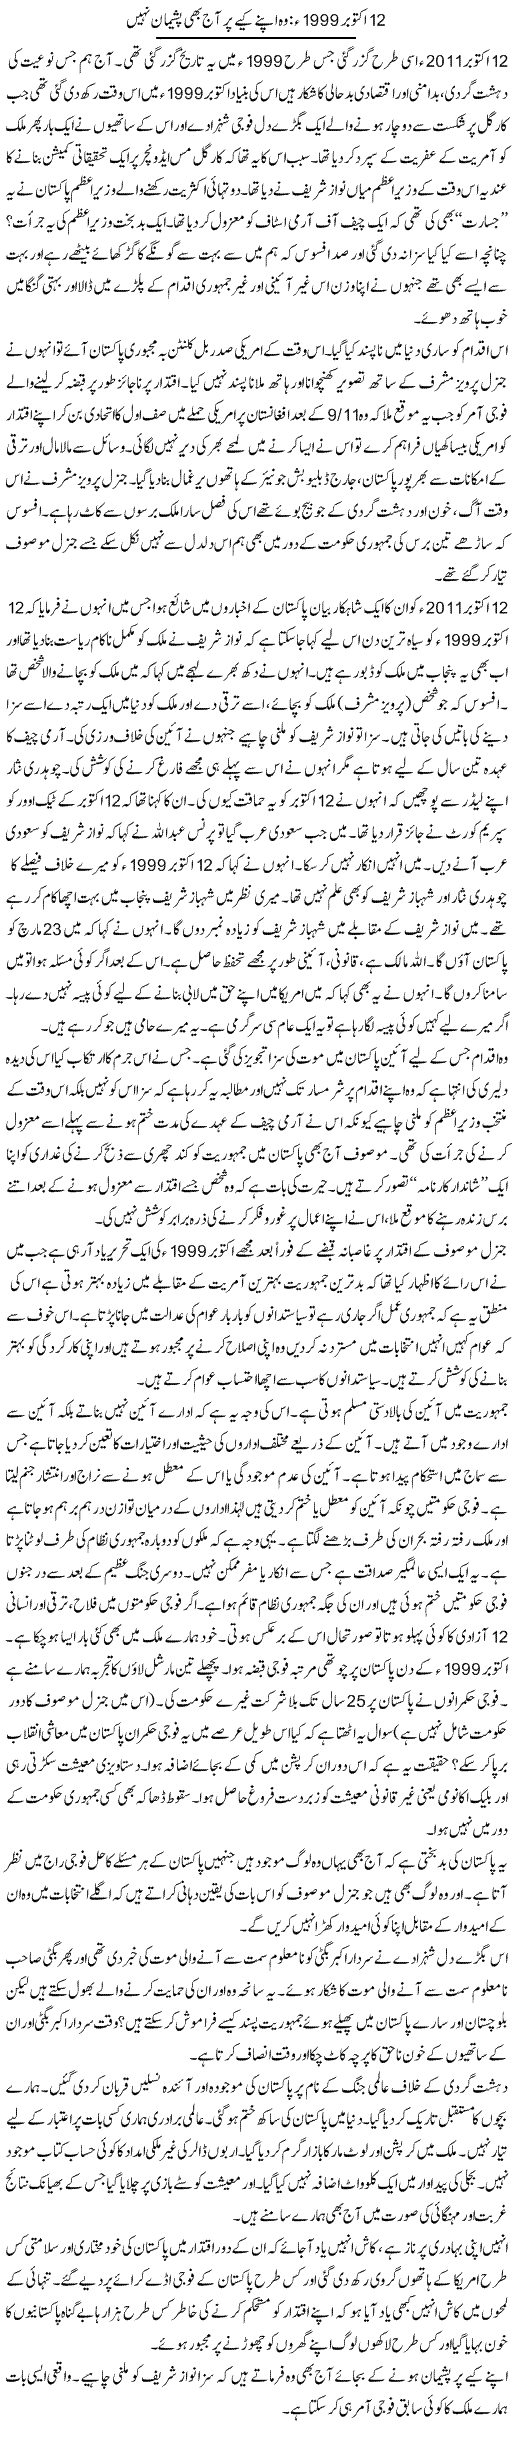 Pervez Musharraf Express Column Zahida Hina 16 October 2011